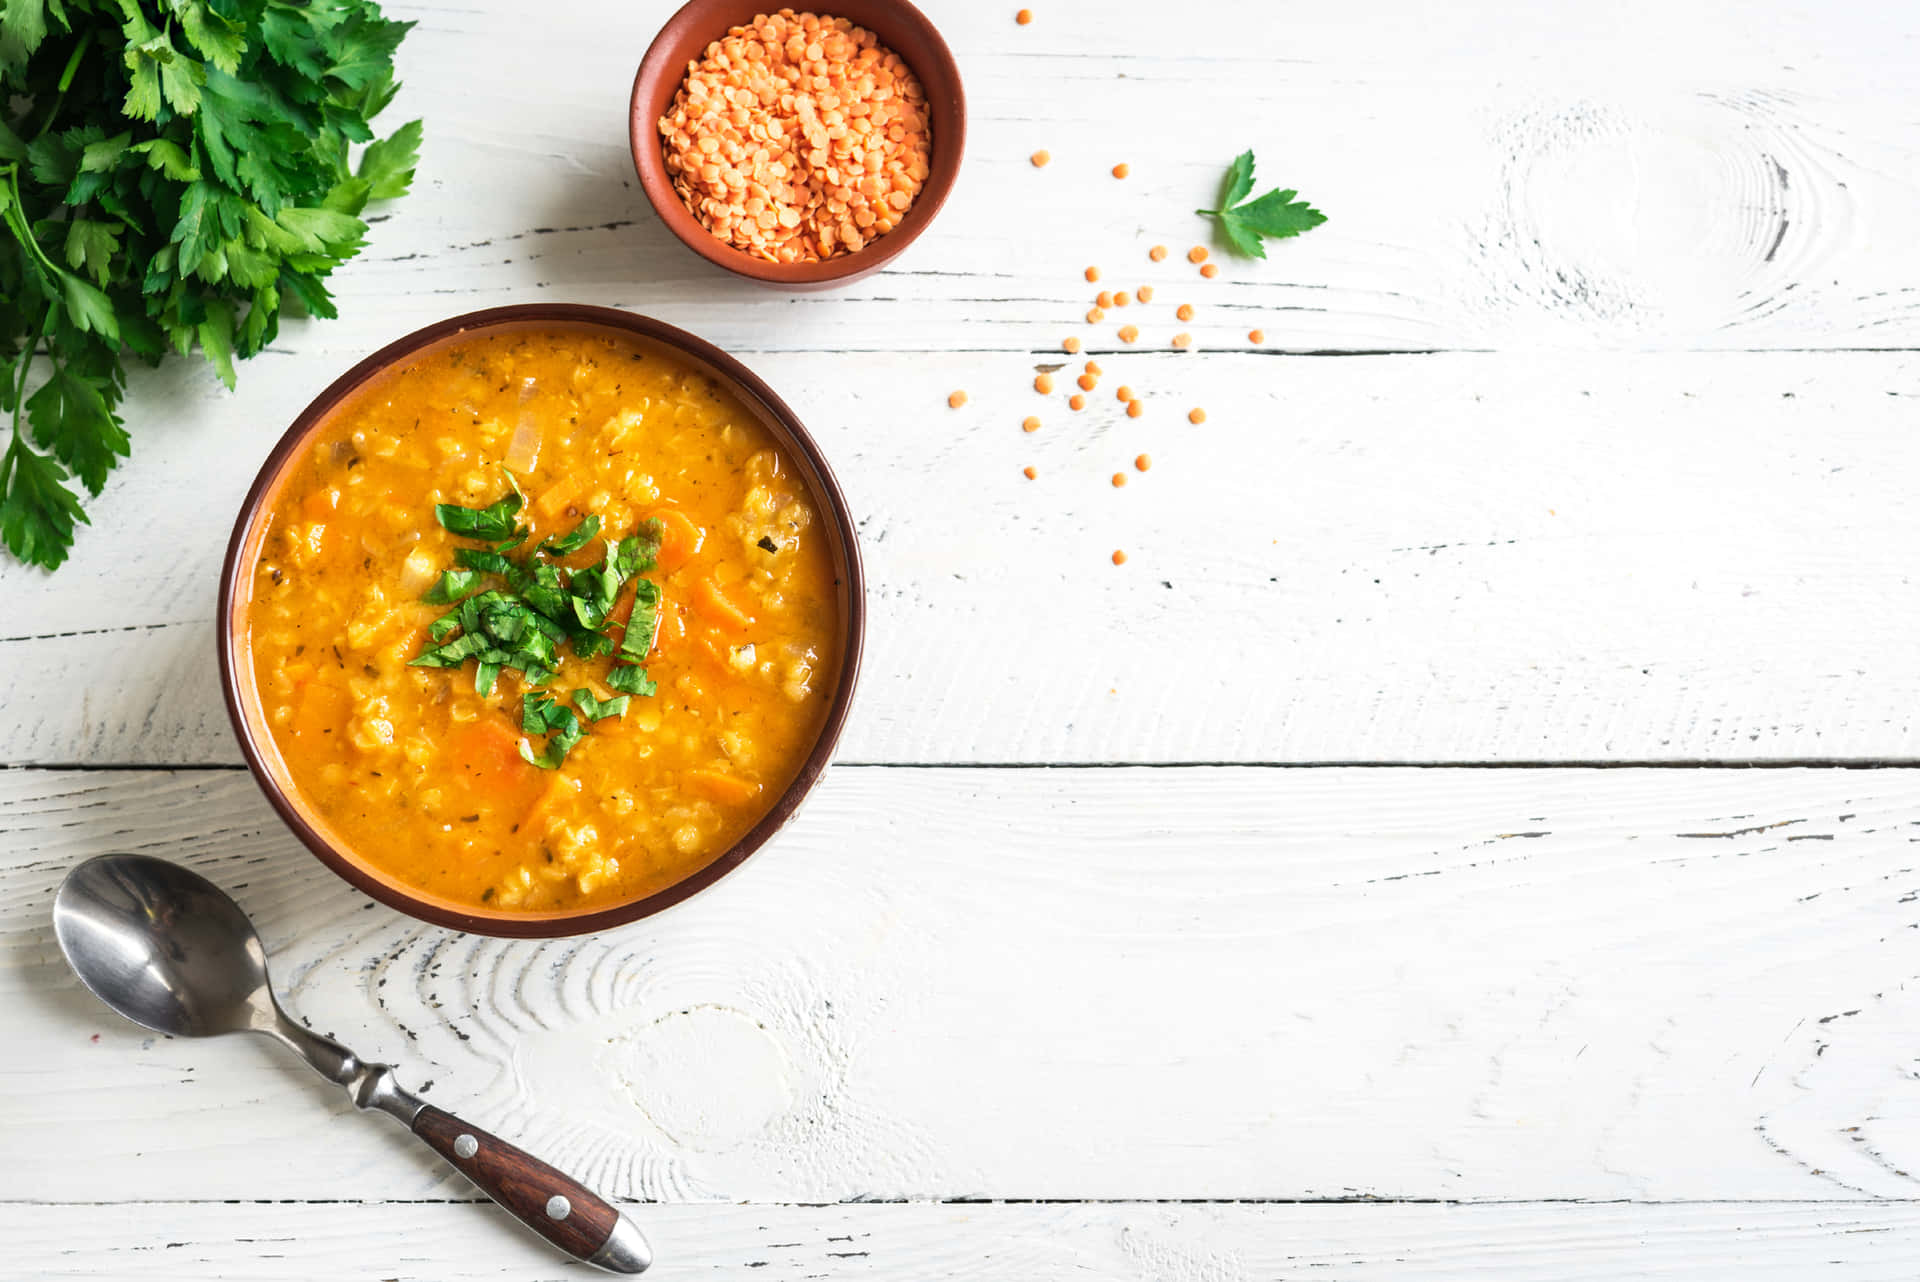 Enjoy a homemade bowl of delicious soup!